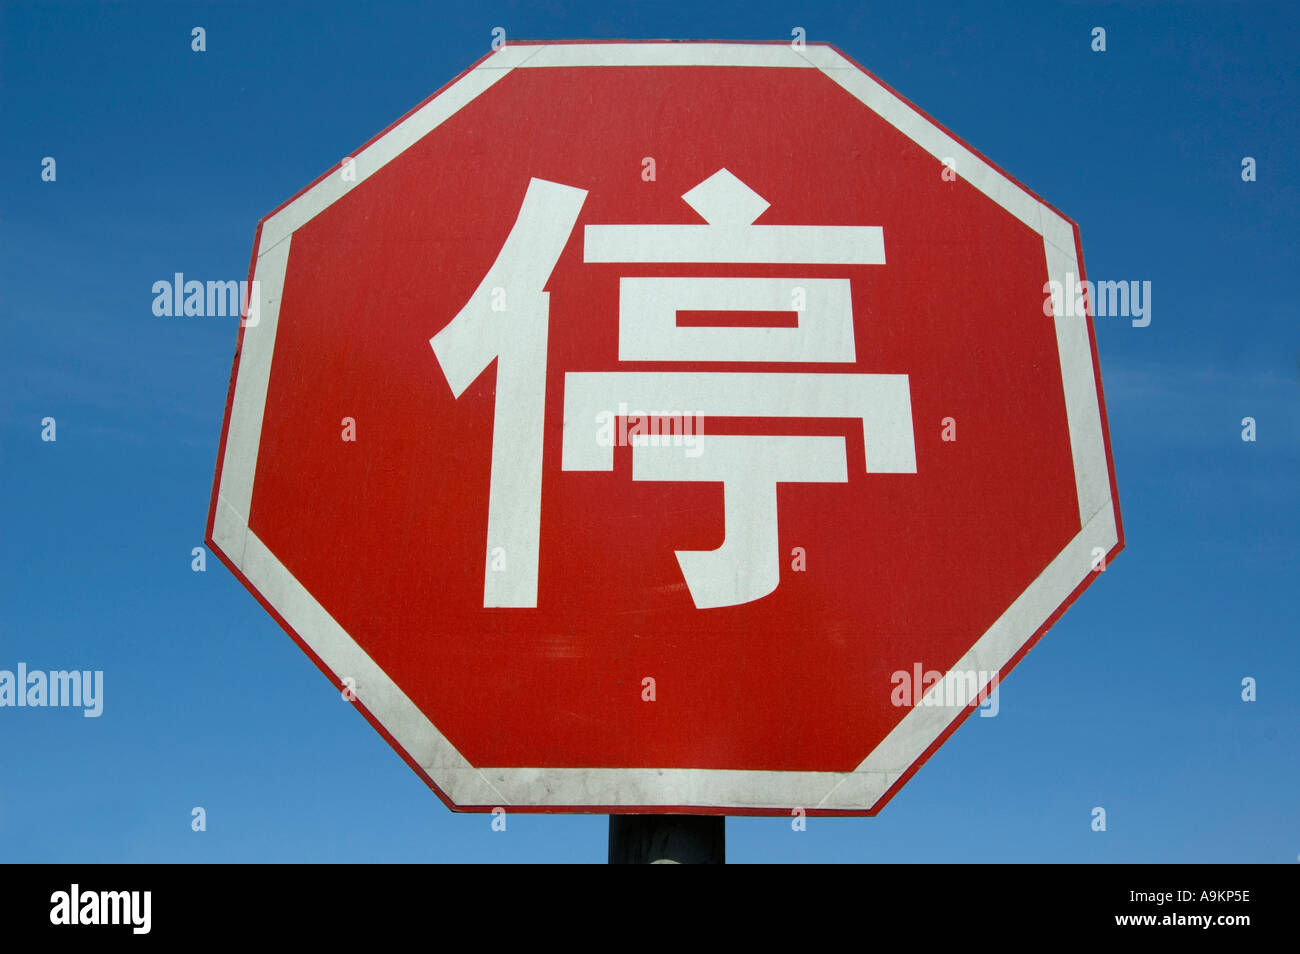 Couverture réfléchissante couverture de circulation de circulation de  circulation de circulation de circulation de circulation Étiquettes - Chine  Panneaux de signalisation, signalisation routière